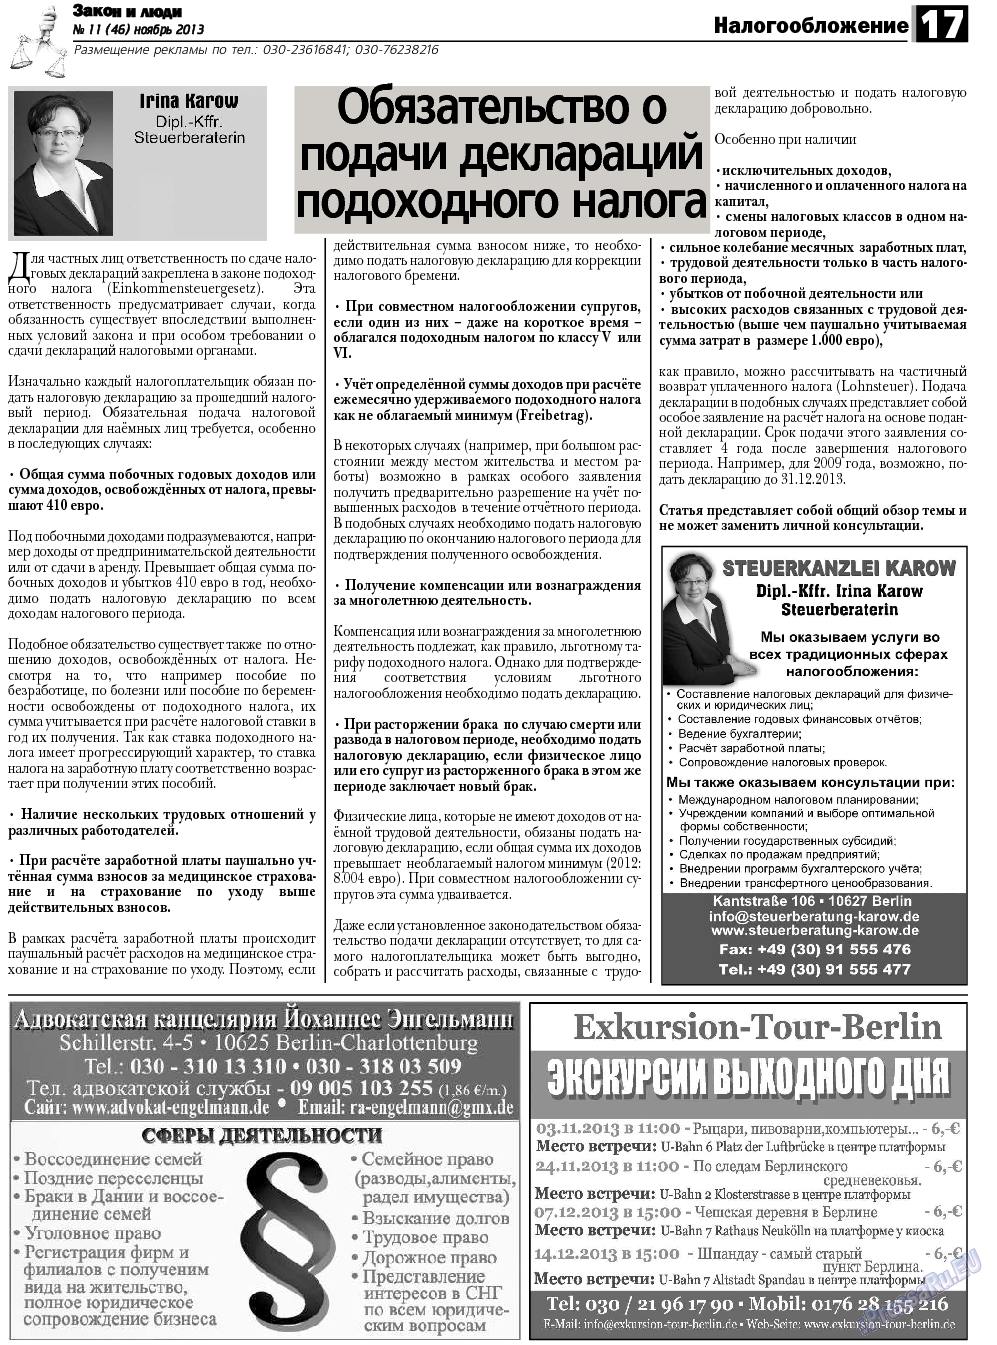 Закон и люди, газета. 2013 №11 стр.17